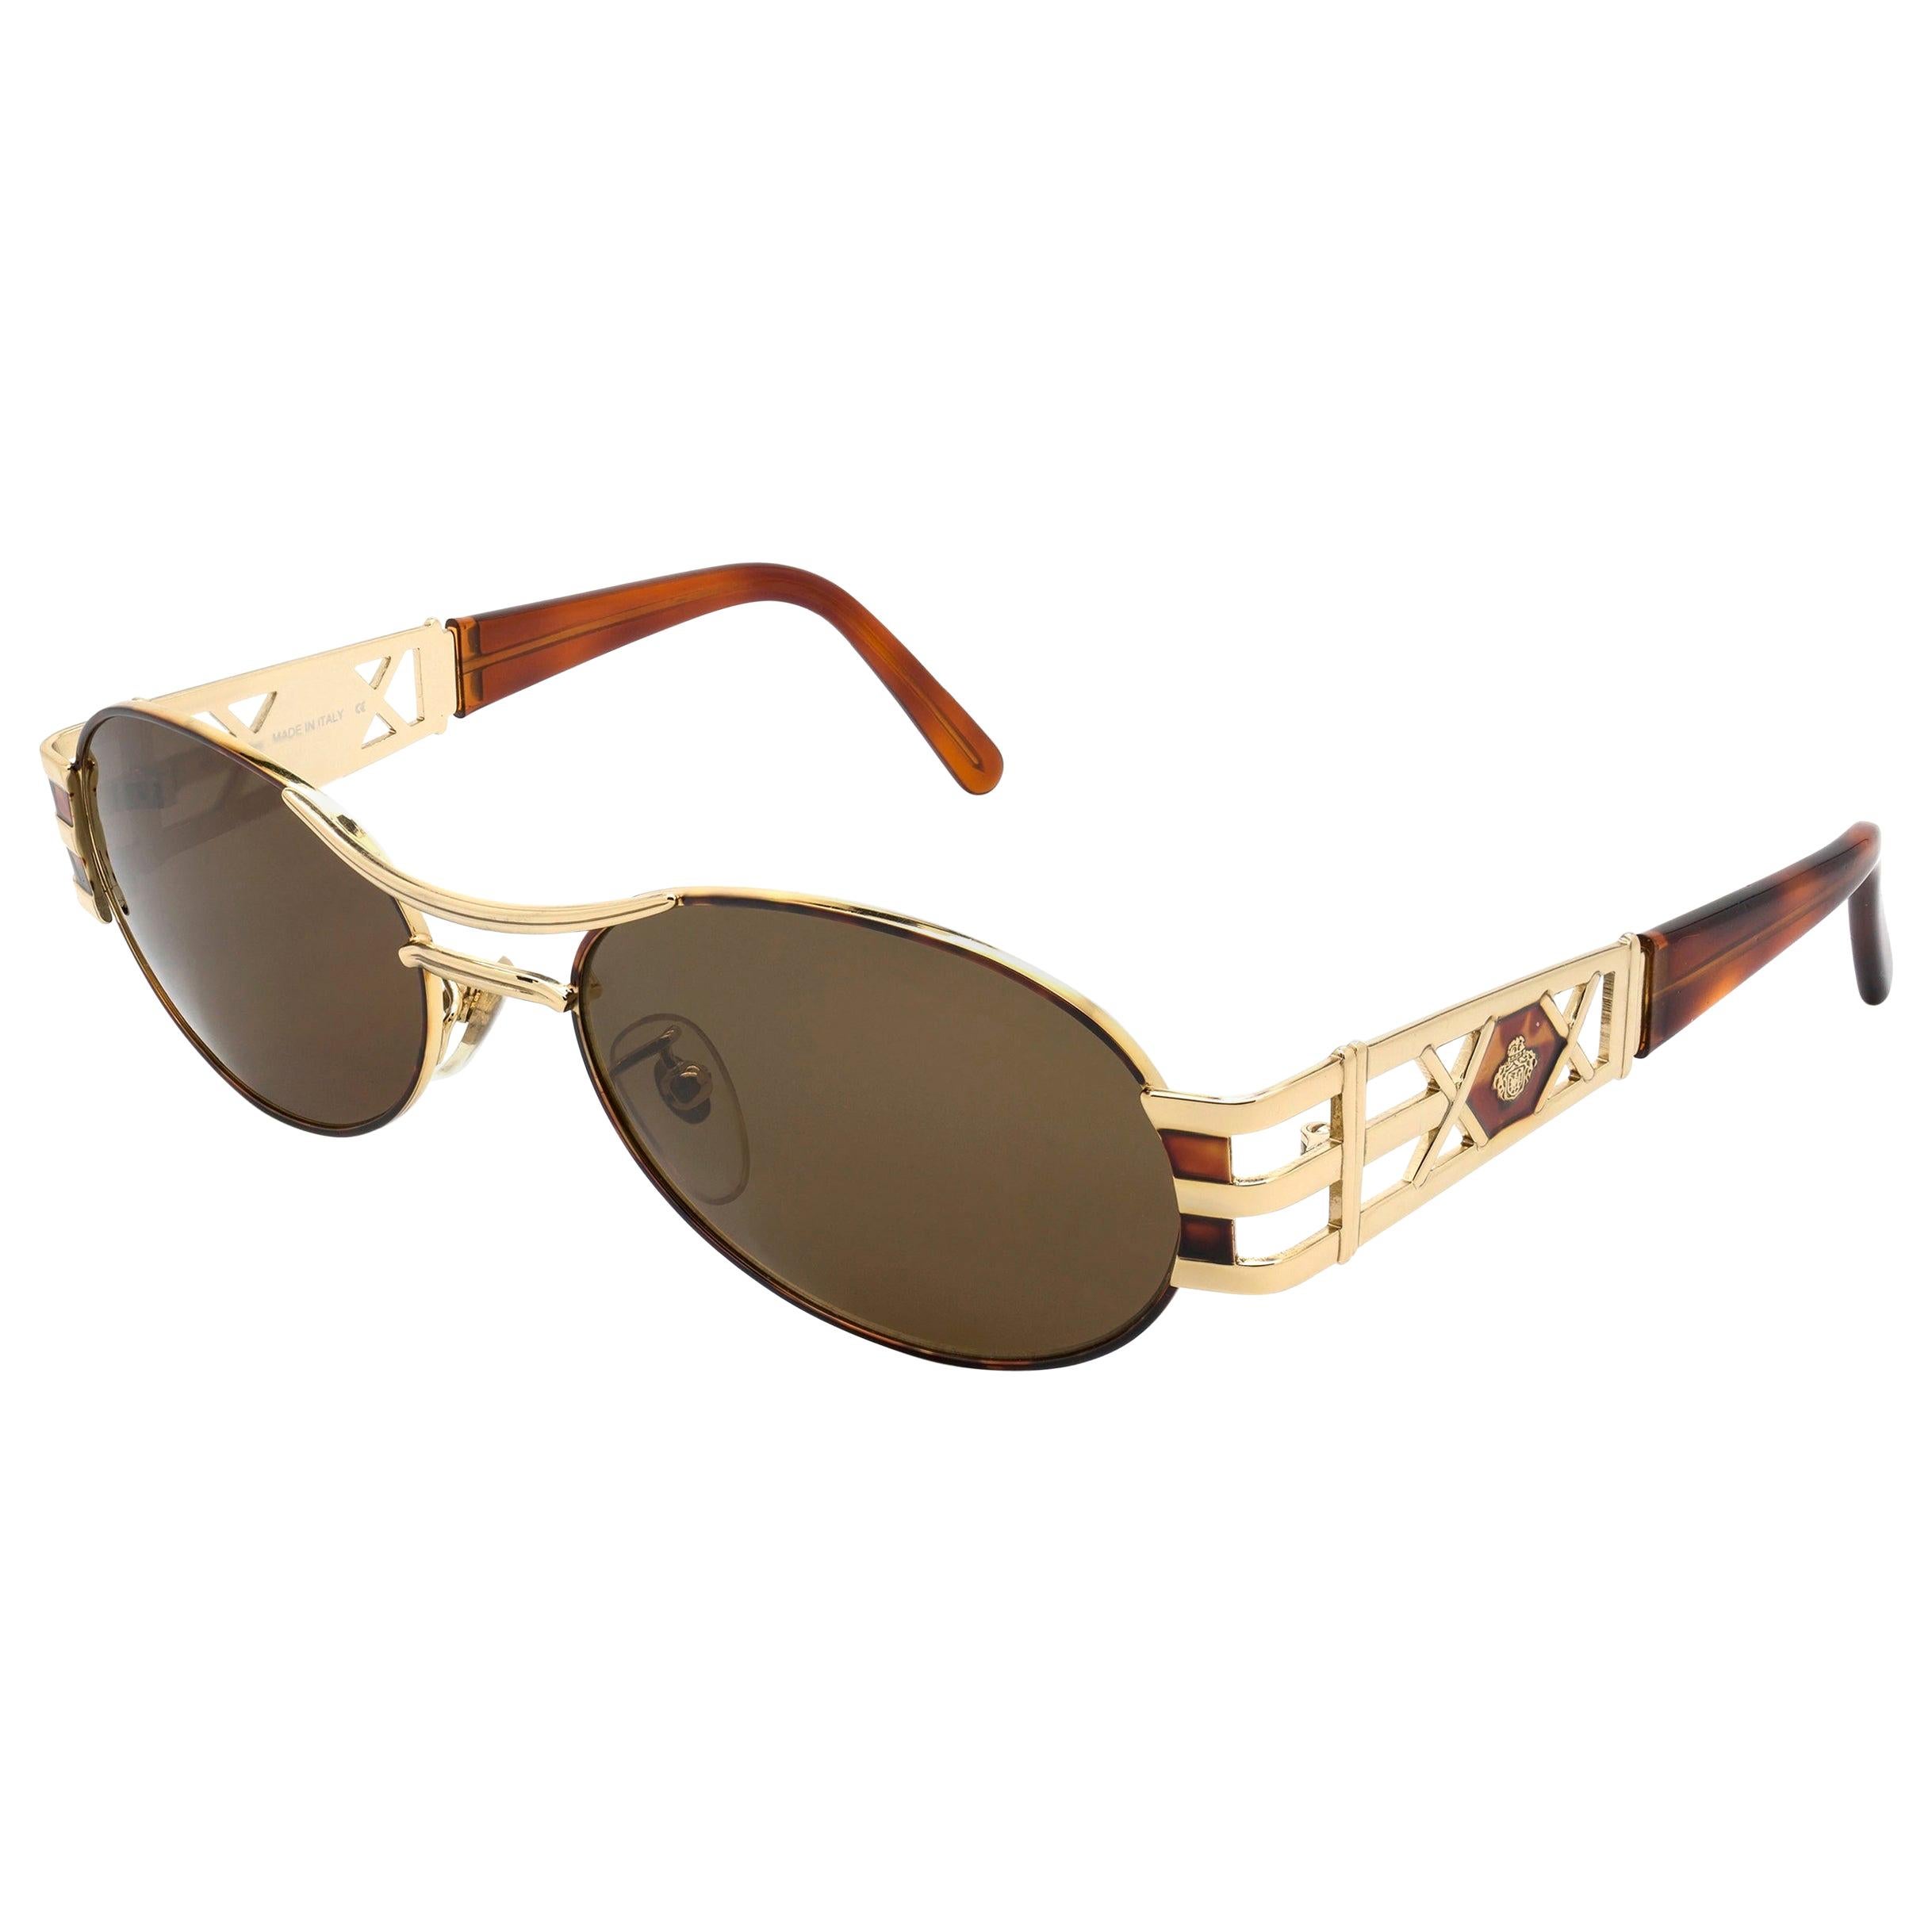 Prince Egon von Furstenberg vintage sunglasses 80s For Sale